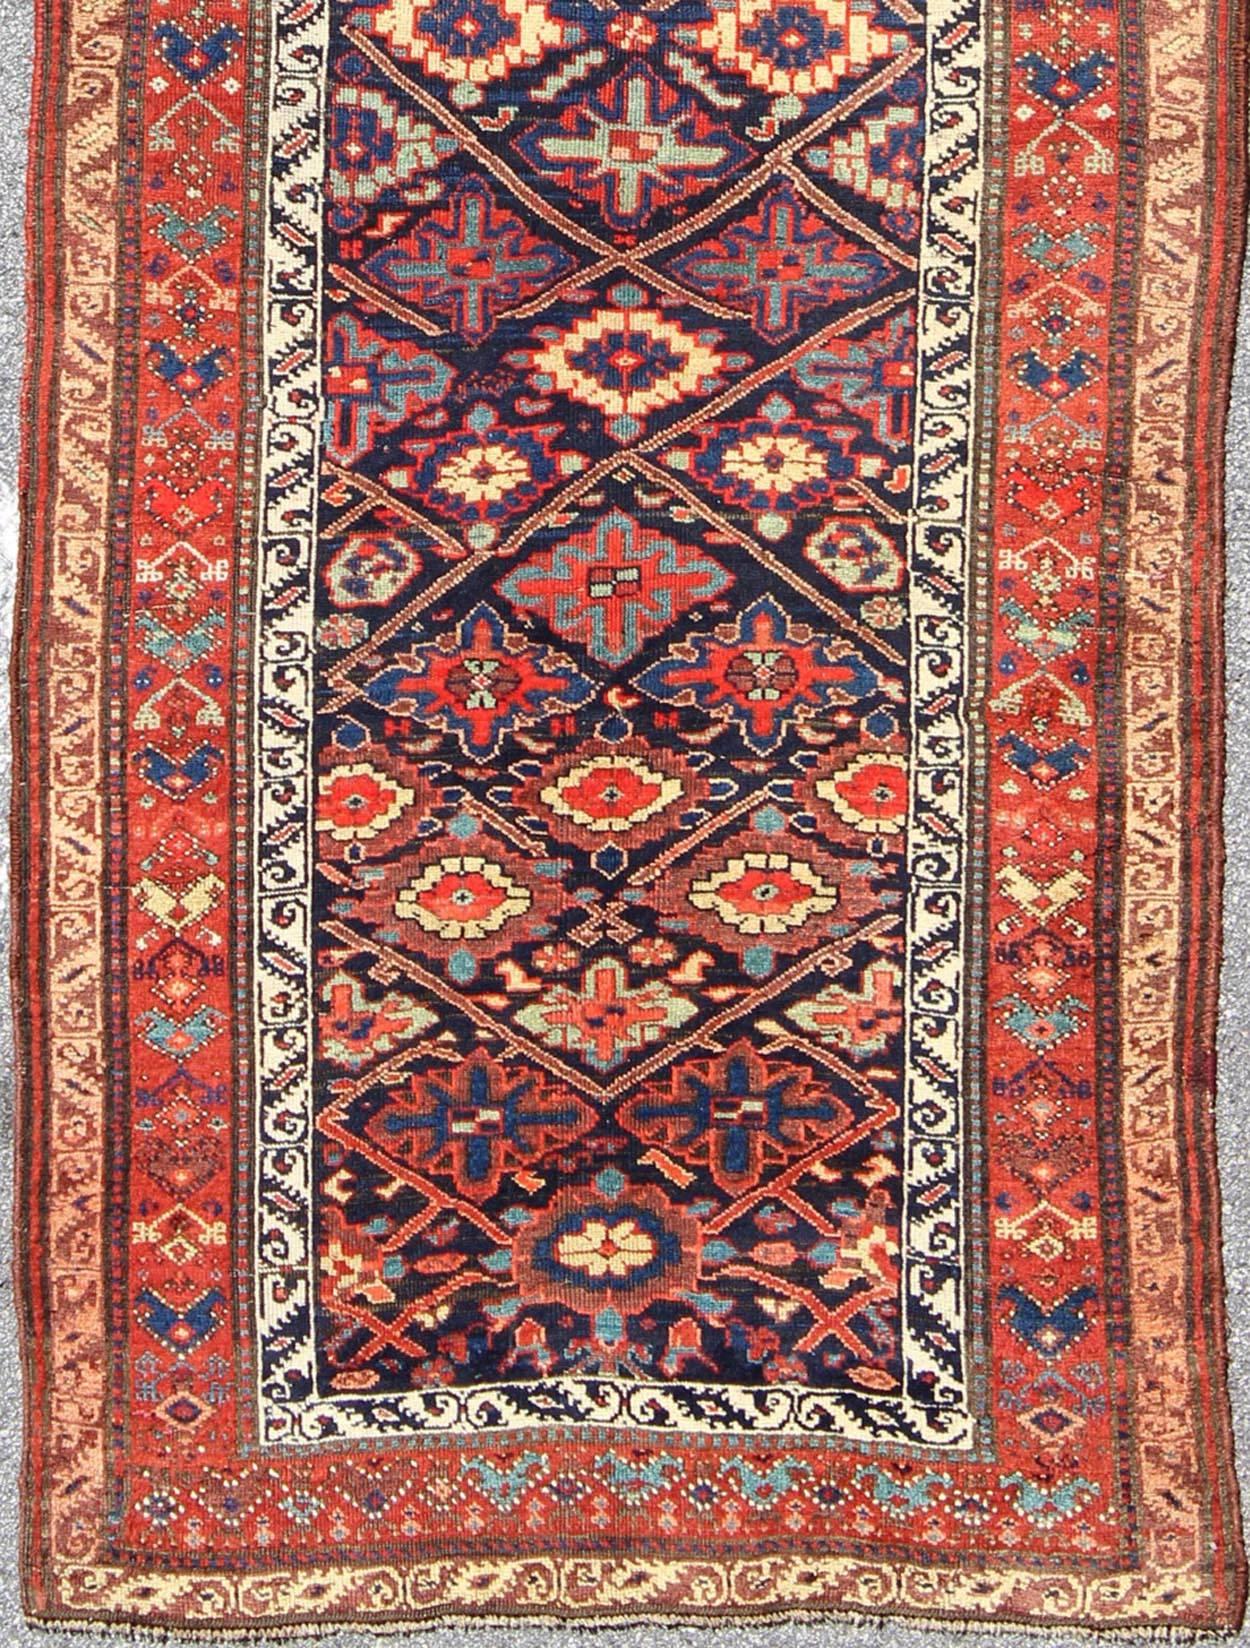 Antique tapis persan Bidjar à motifs de diamants sub-géométriques en bleu nuit, tapis 17-0911, pays d'origine / type : Iran / Bidjar, circa 1900

Ce magnifique tapis persan Bidjar du début du 20e siècle intègre brillamment des couleurs